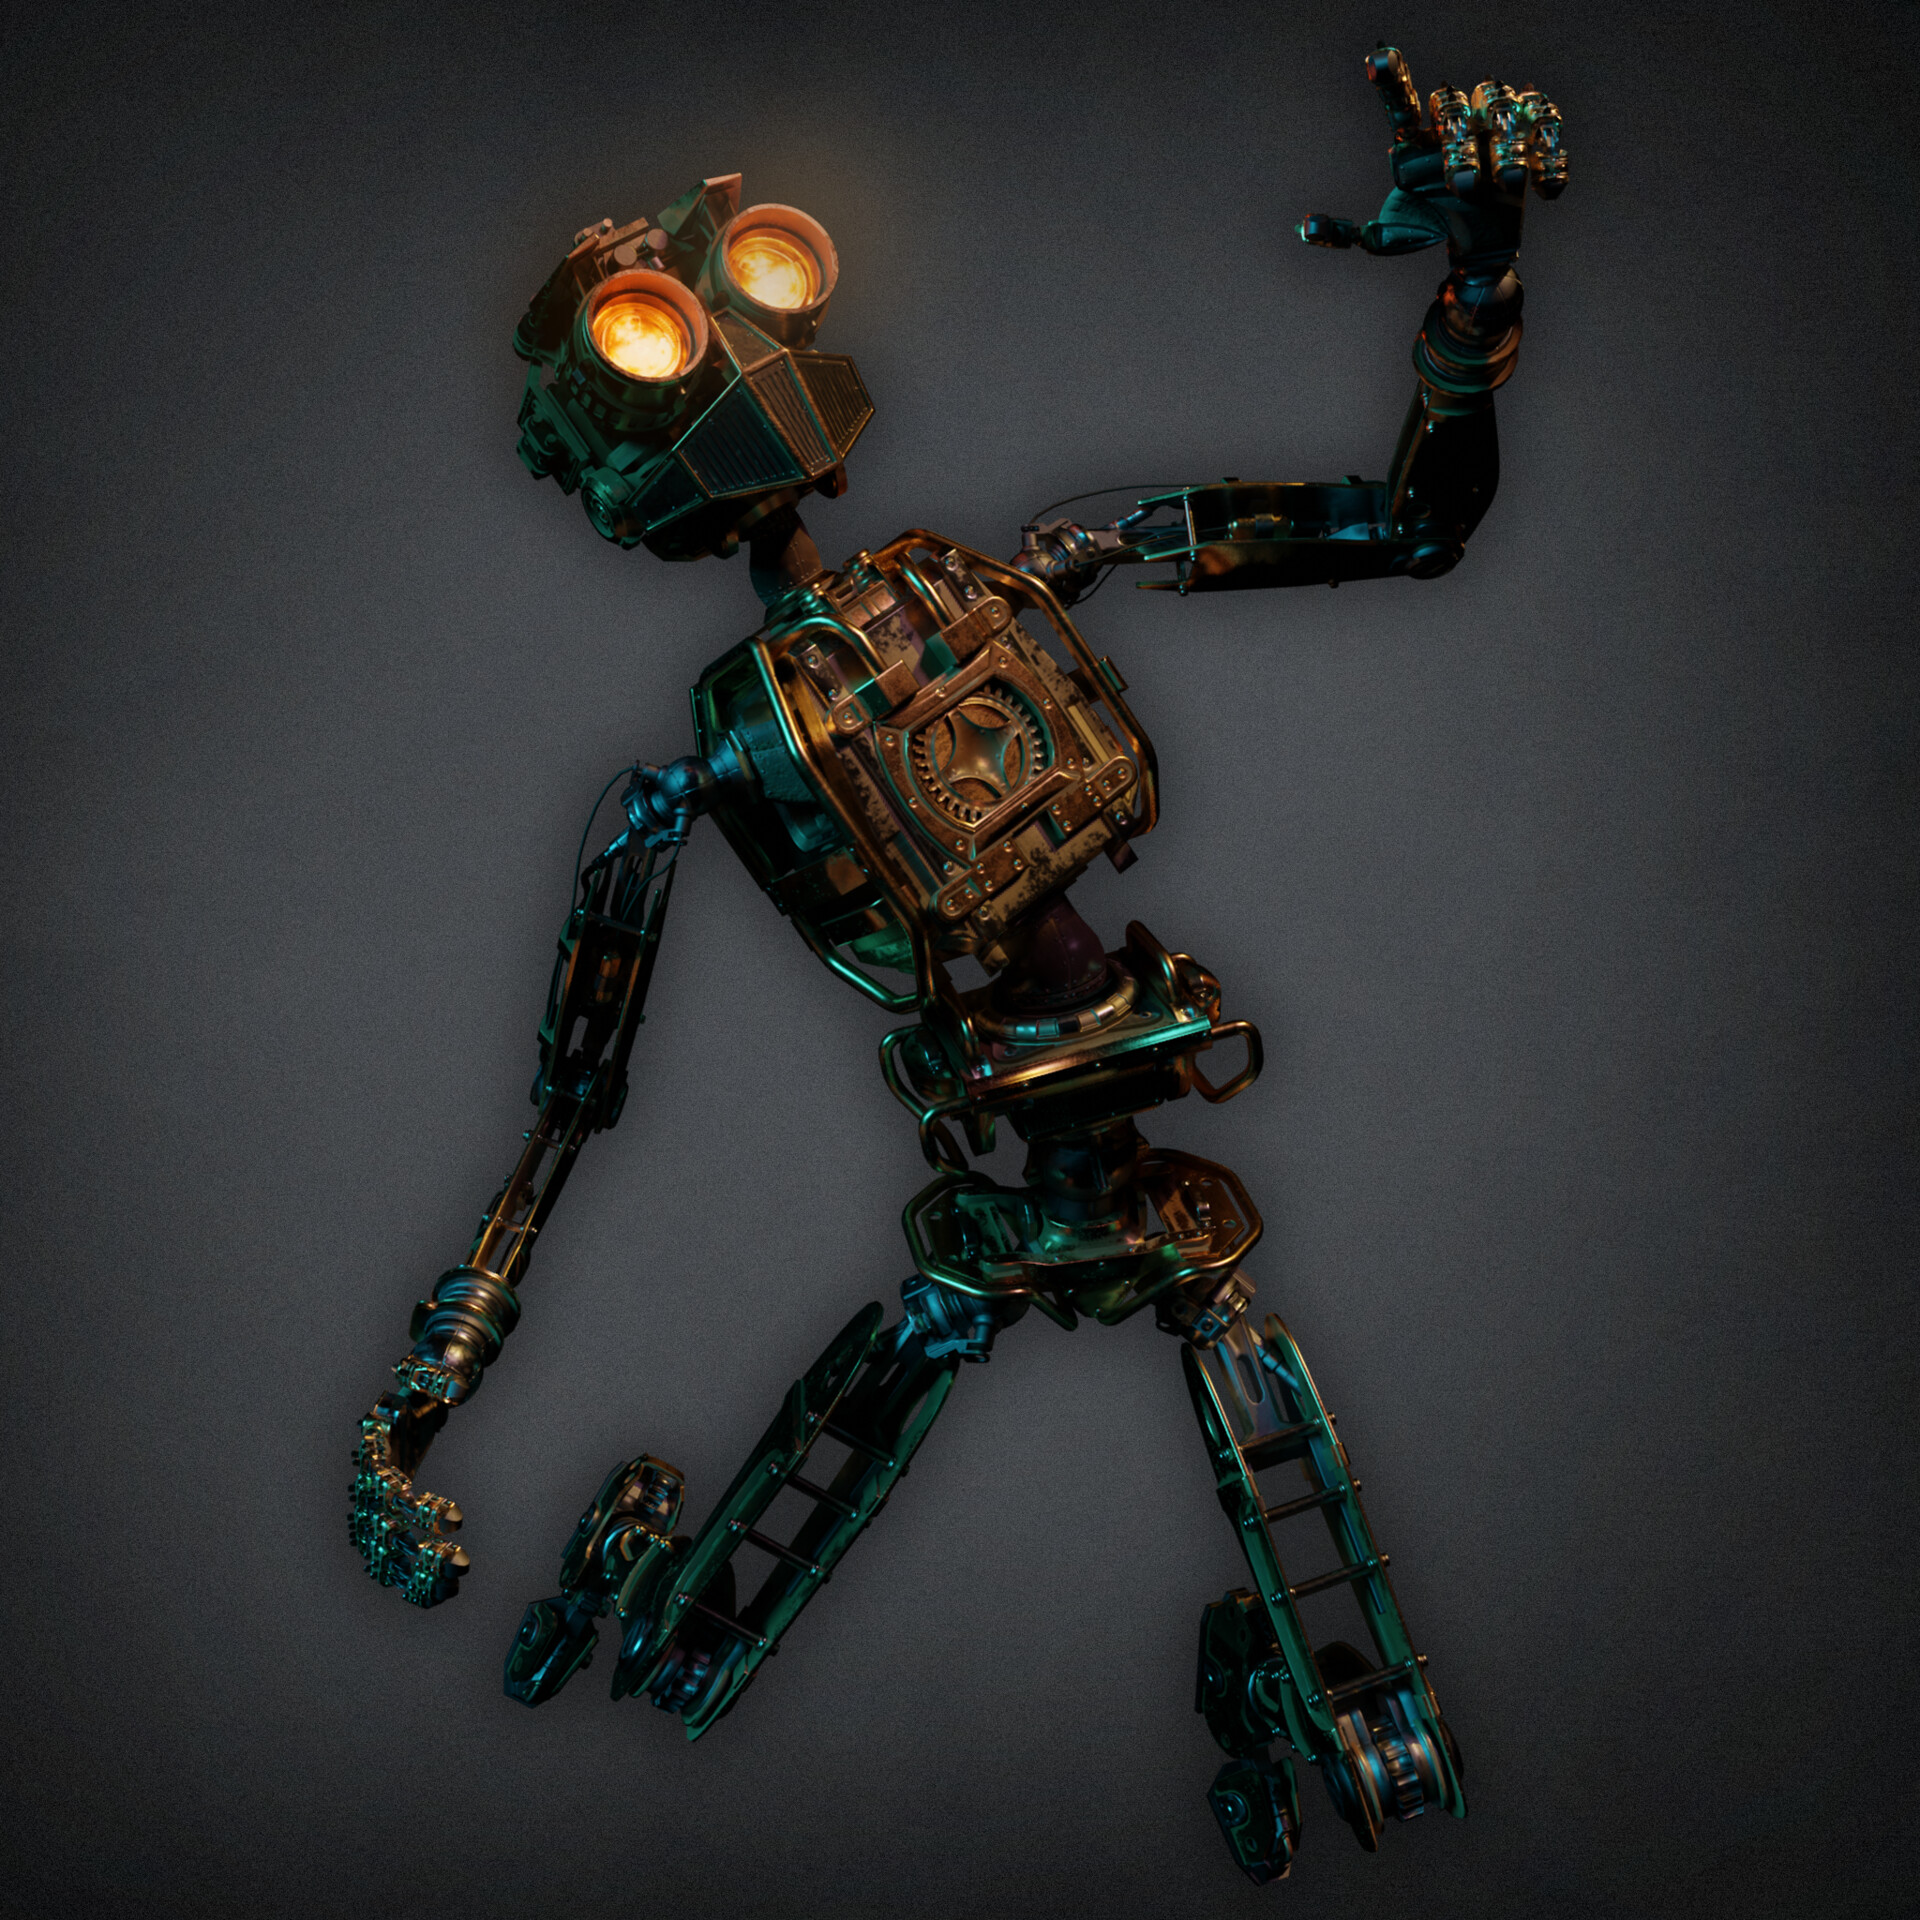 Jacob Foster - Steampunk Automaton